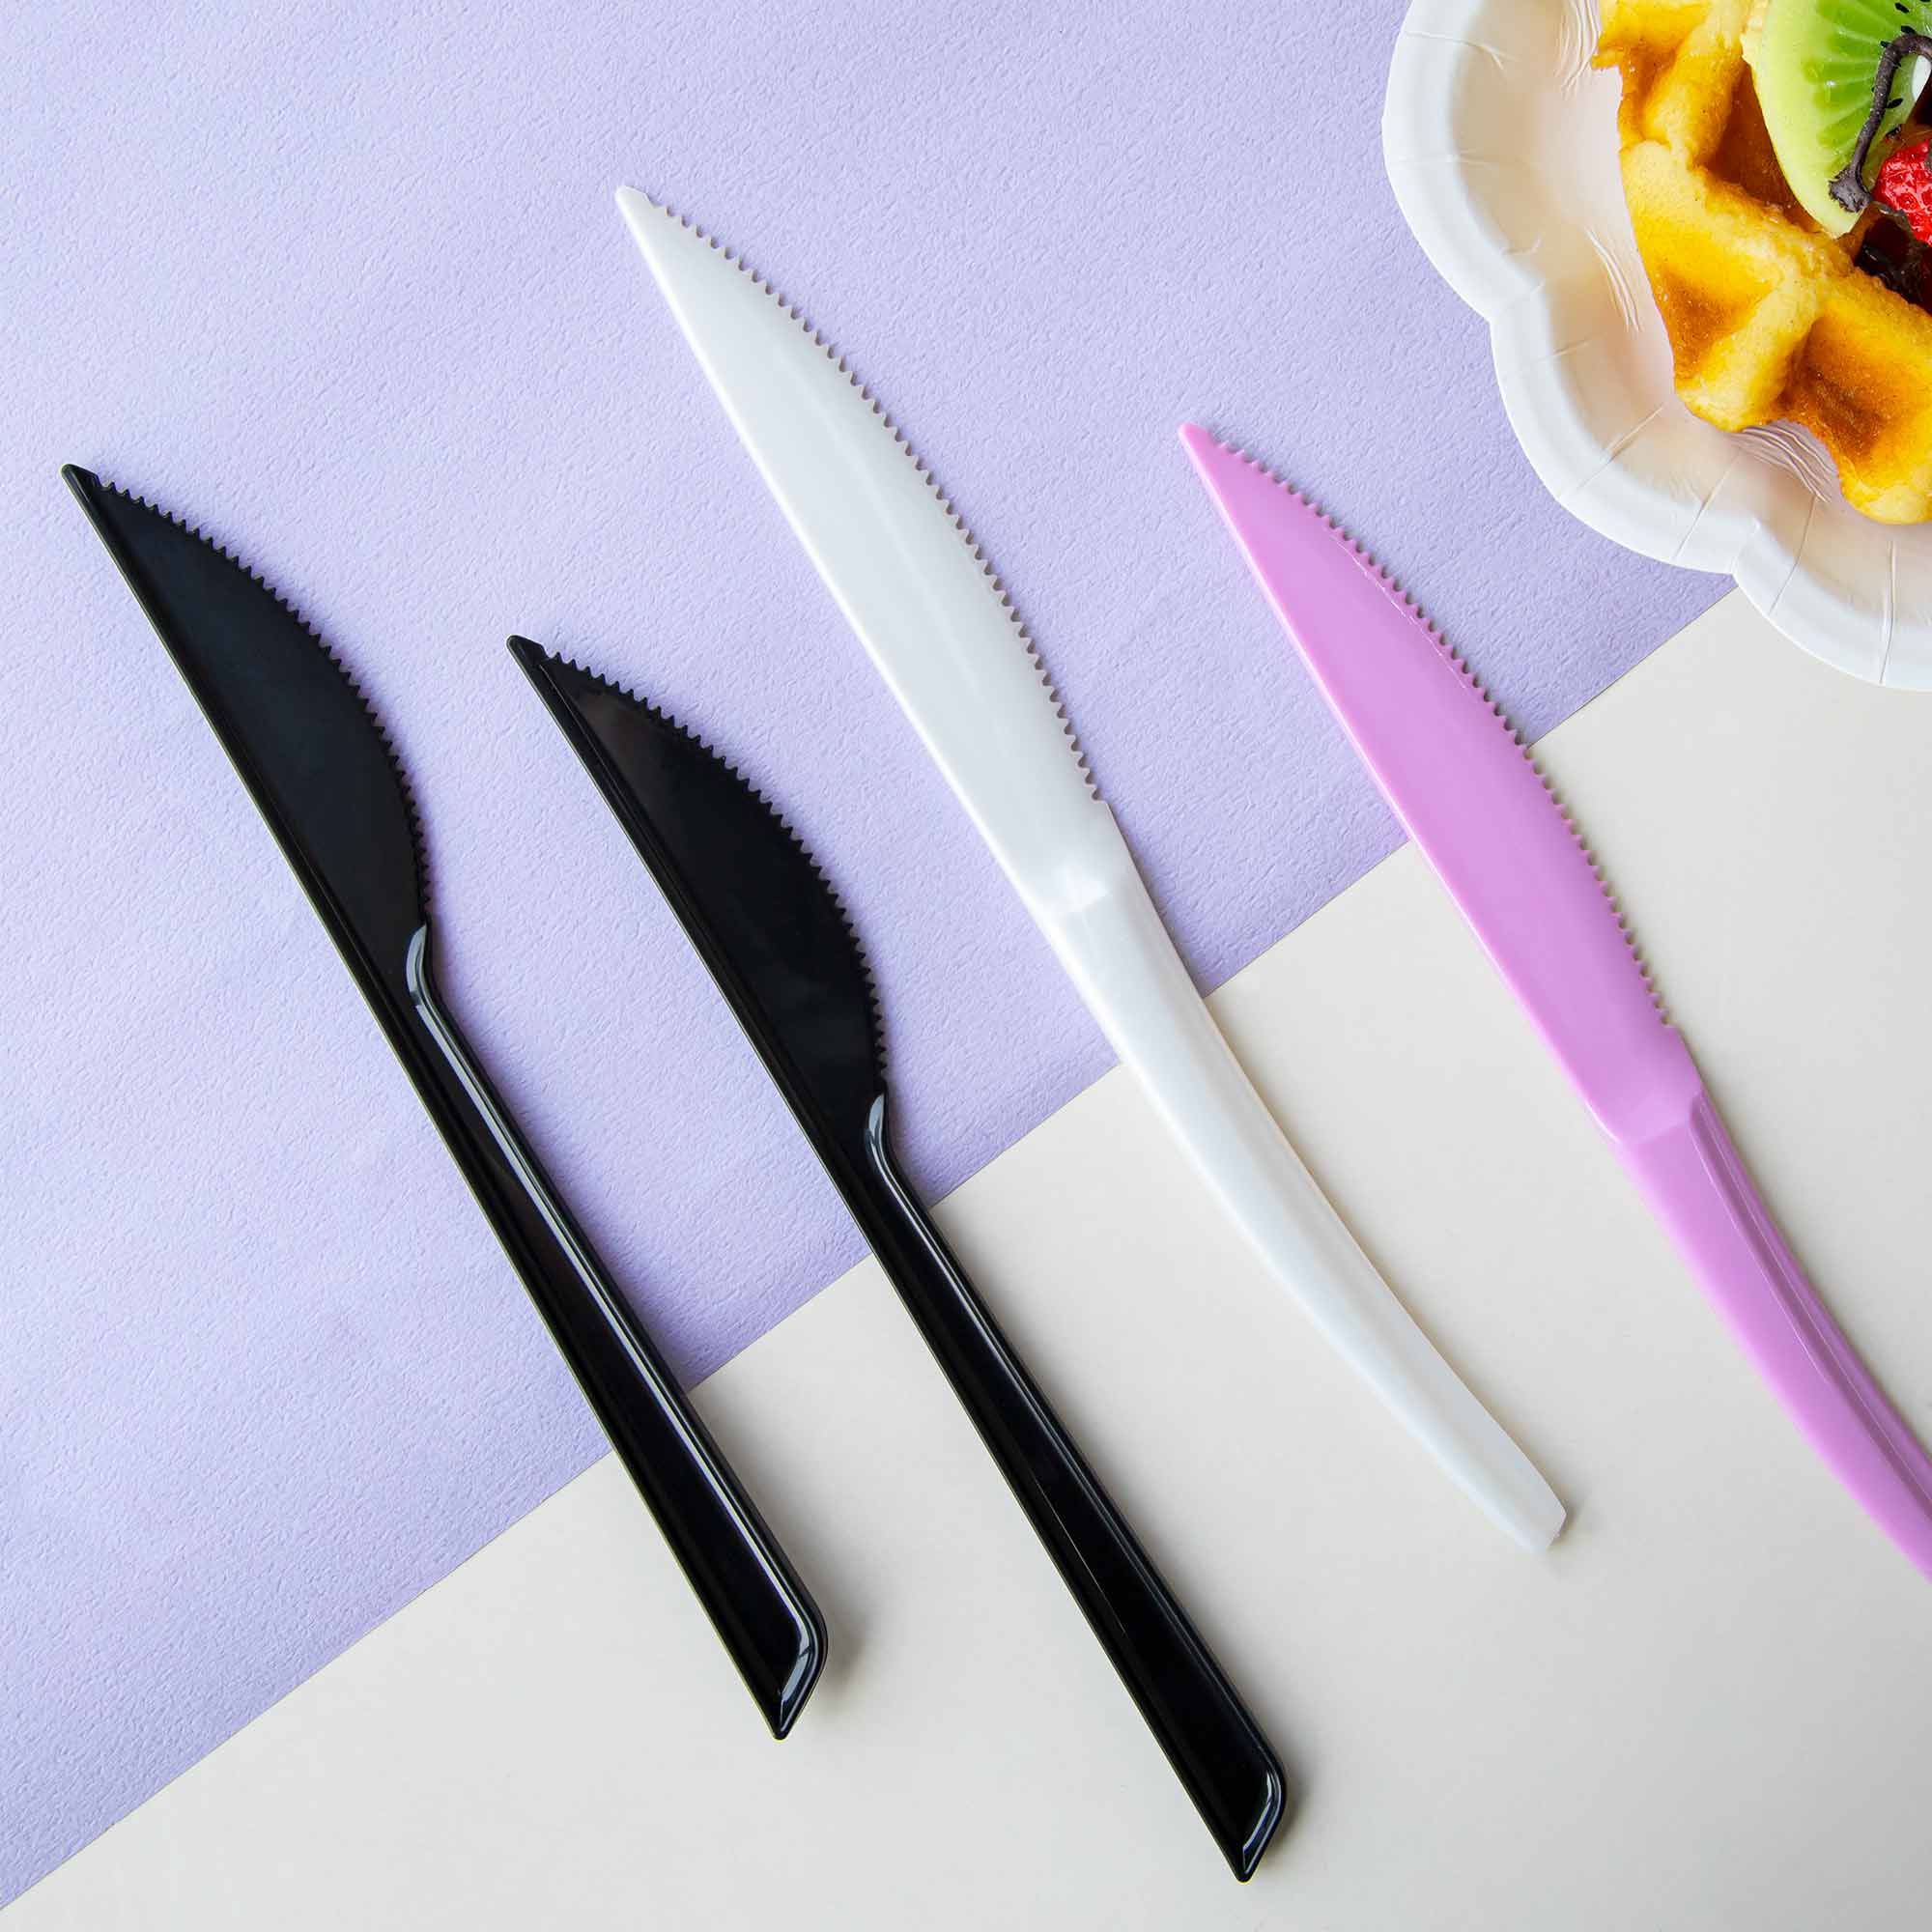 Couteau en plastique - Couteaux jetables, couteaux colorés, Conception de  couverts en plastique personnalisés et fabrication de vaisselle en plastique